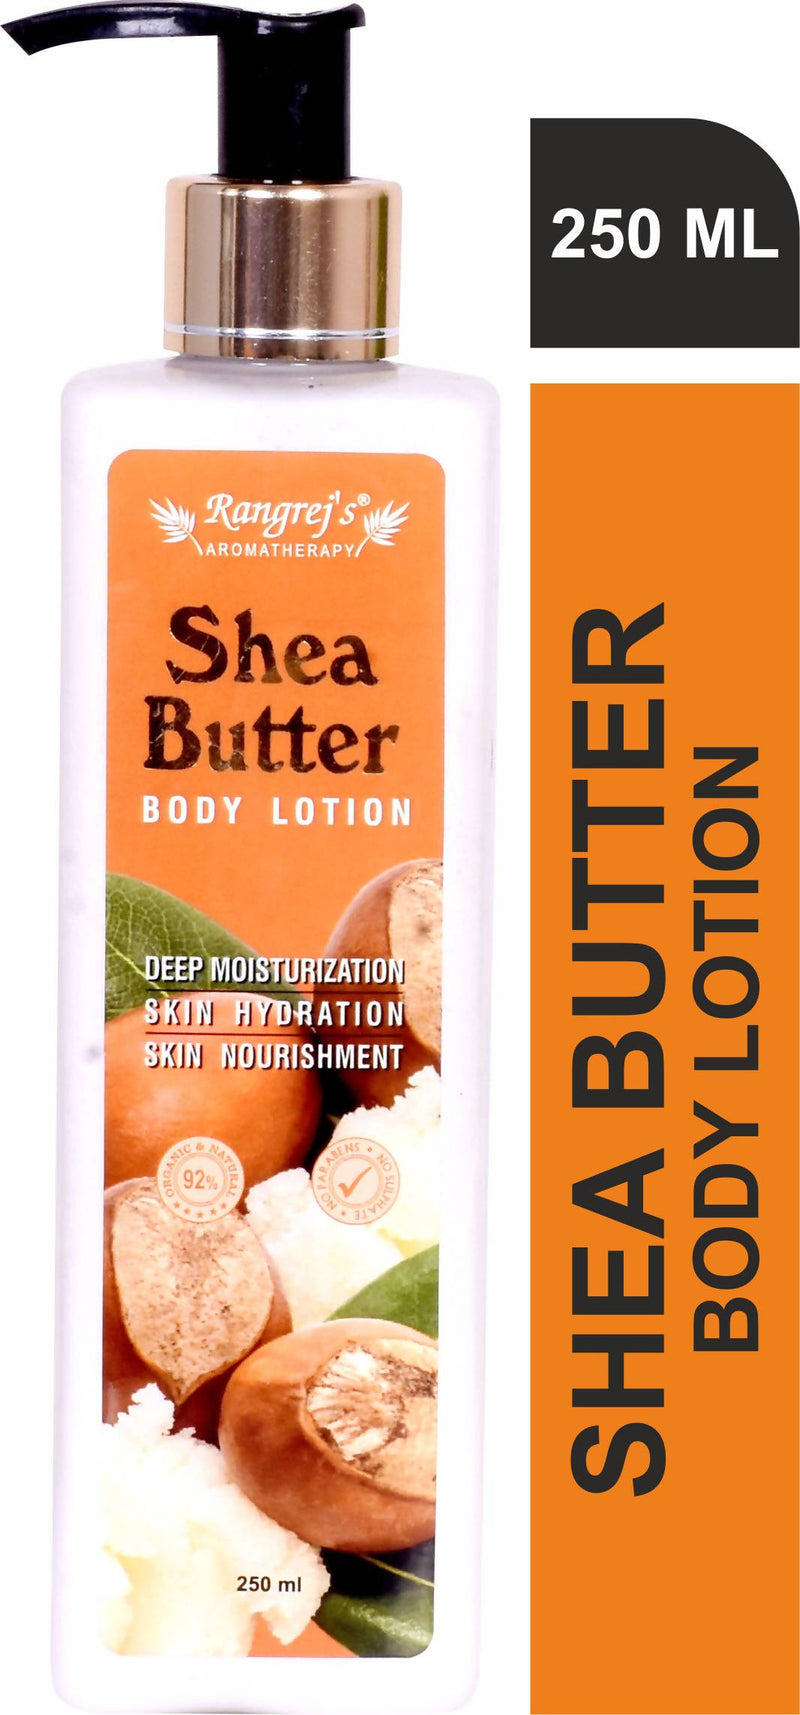 Rangrej's Aromatherapy Shea butter body lotion